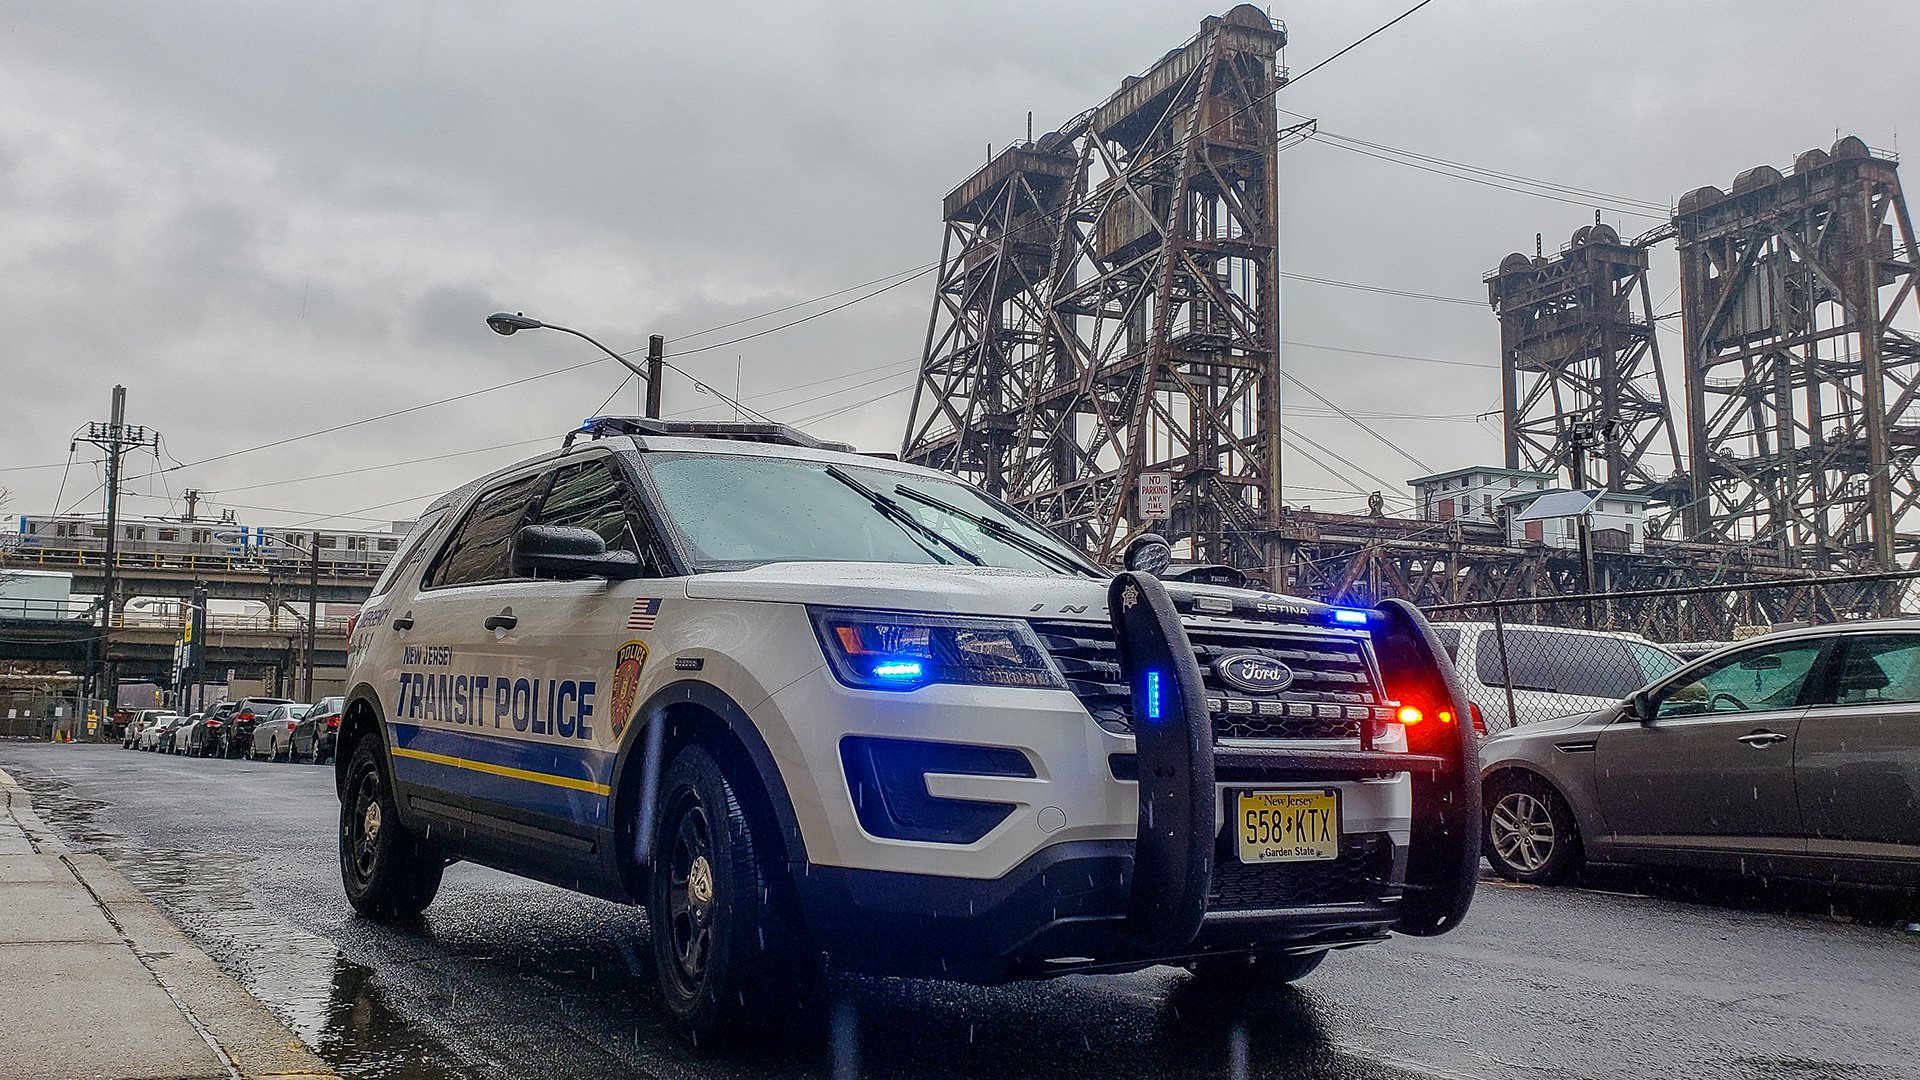 NJ TRANSIT Police Department, NJ Police Jobs